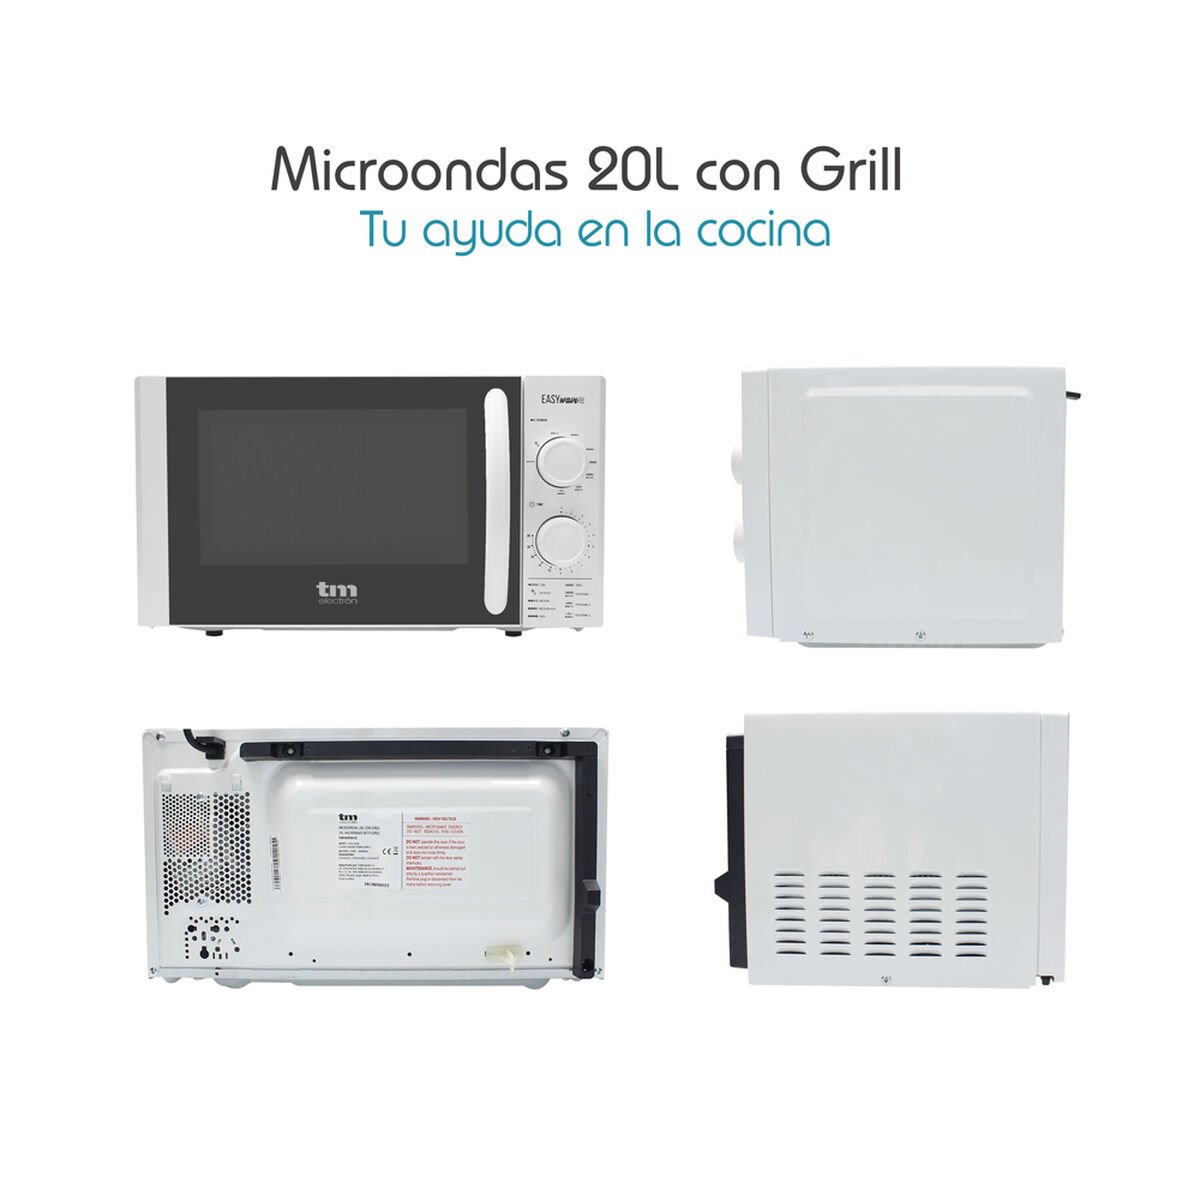 Microondas con grill - Conforama